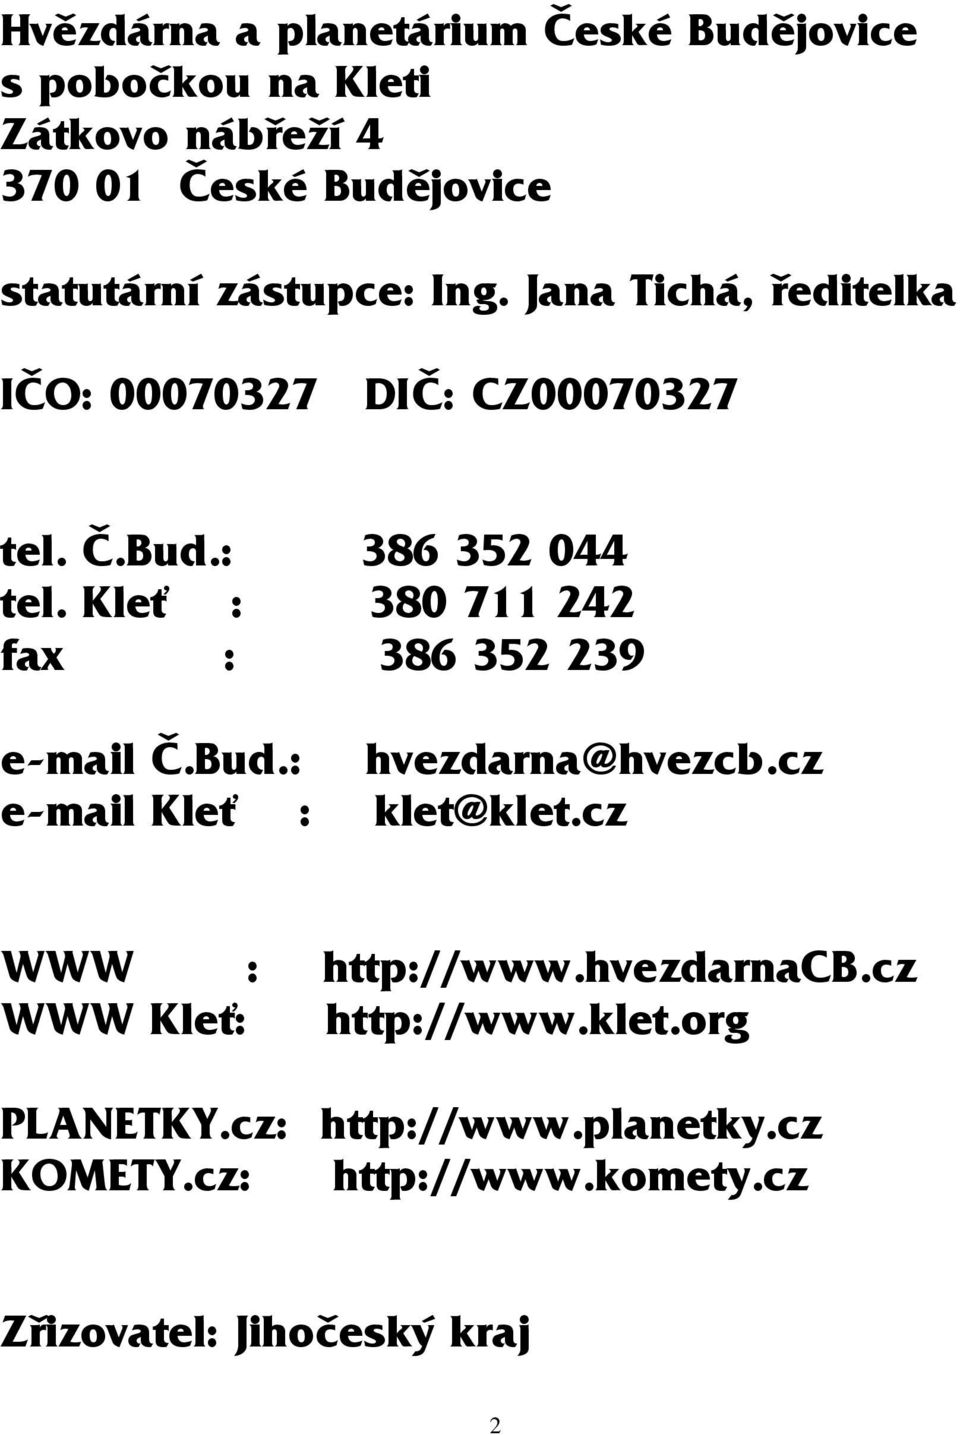 Kleť : 380 711 242 fax : 386 352 239 e-mail Č.Bud.: hvezdarna@hvezcb.cz e-mail Kleť : klet@klet.cz WWW : http://www.